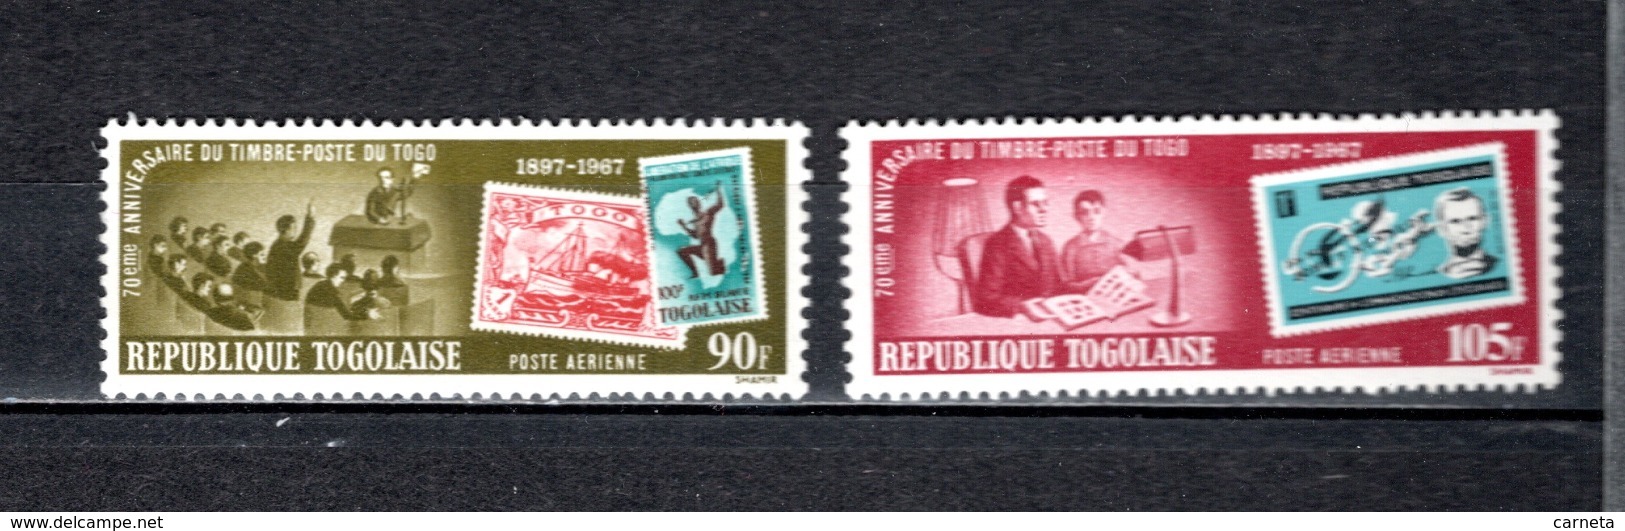 TOGO PA N°  84 + 85  NEUFS SANS CHARNIERE COTE  5.50€  TIMBRE SUR TIMBRE POSTE  VOIR DESCRIPTION - Togo (1960-...)